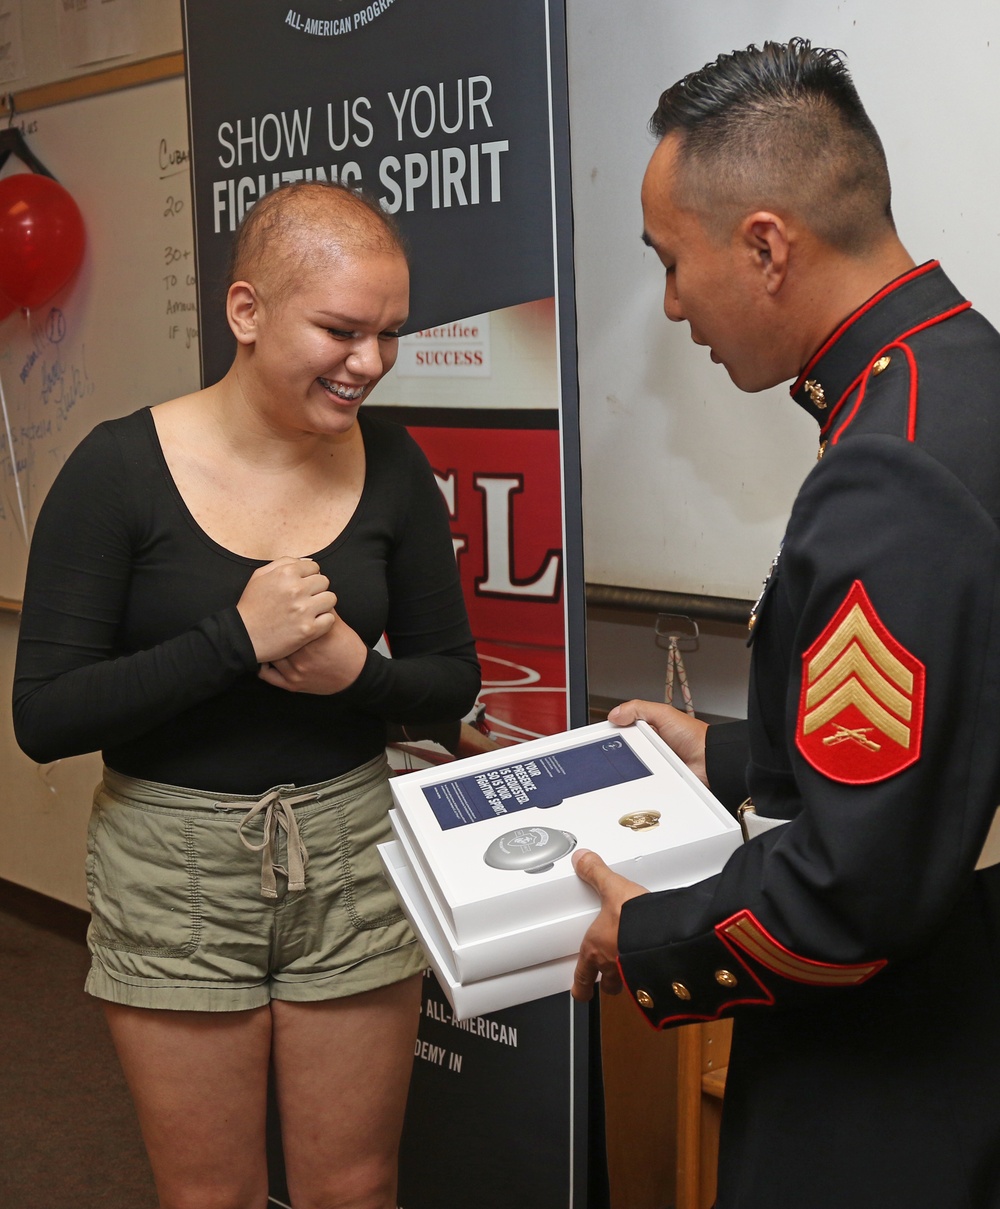 Andrea Ramirez congratulated as Marine Corps' Semper Fidelis All-American